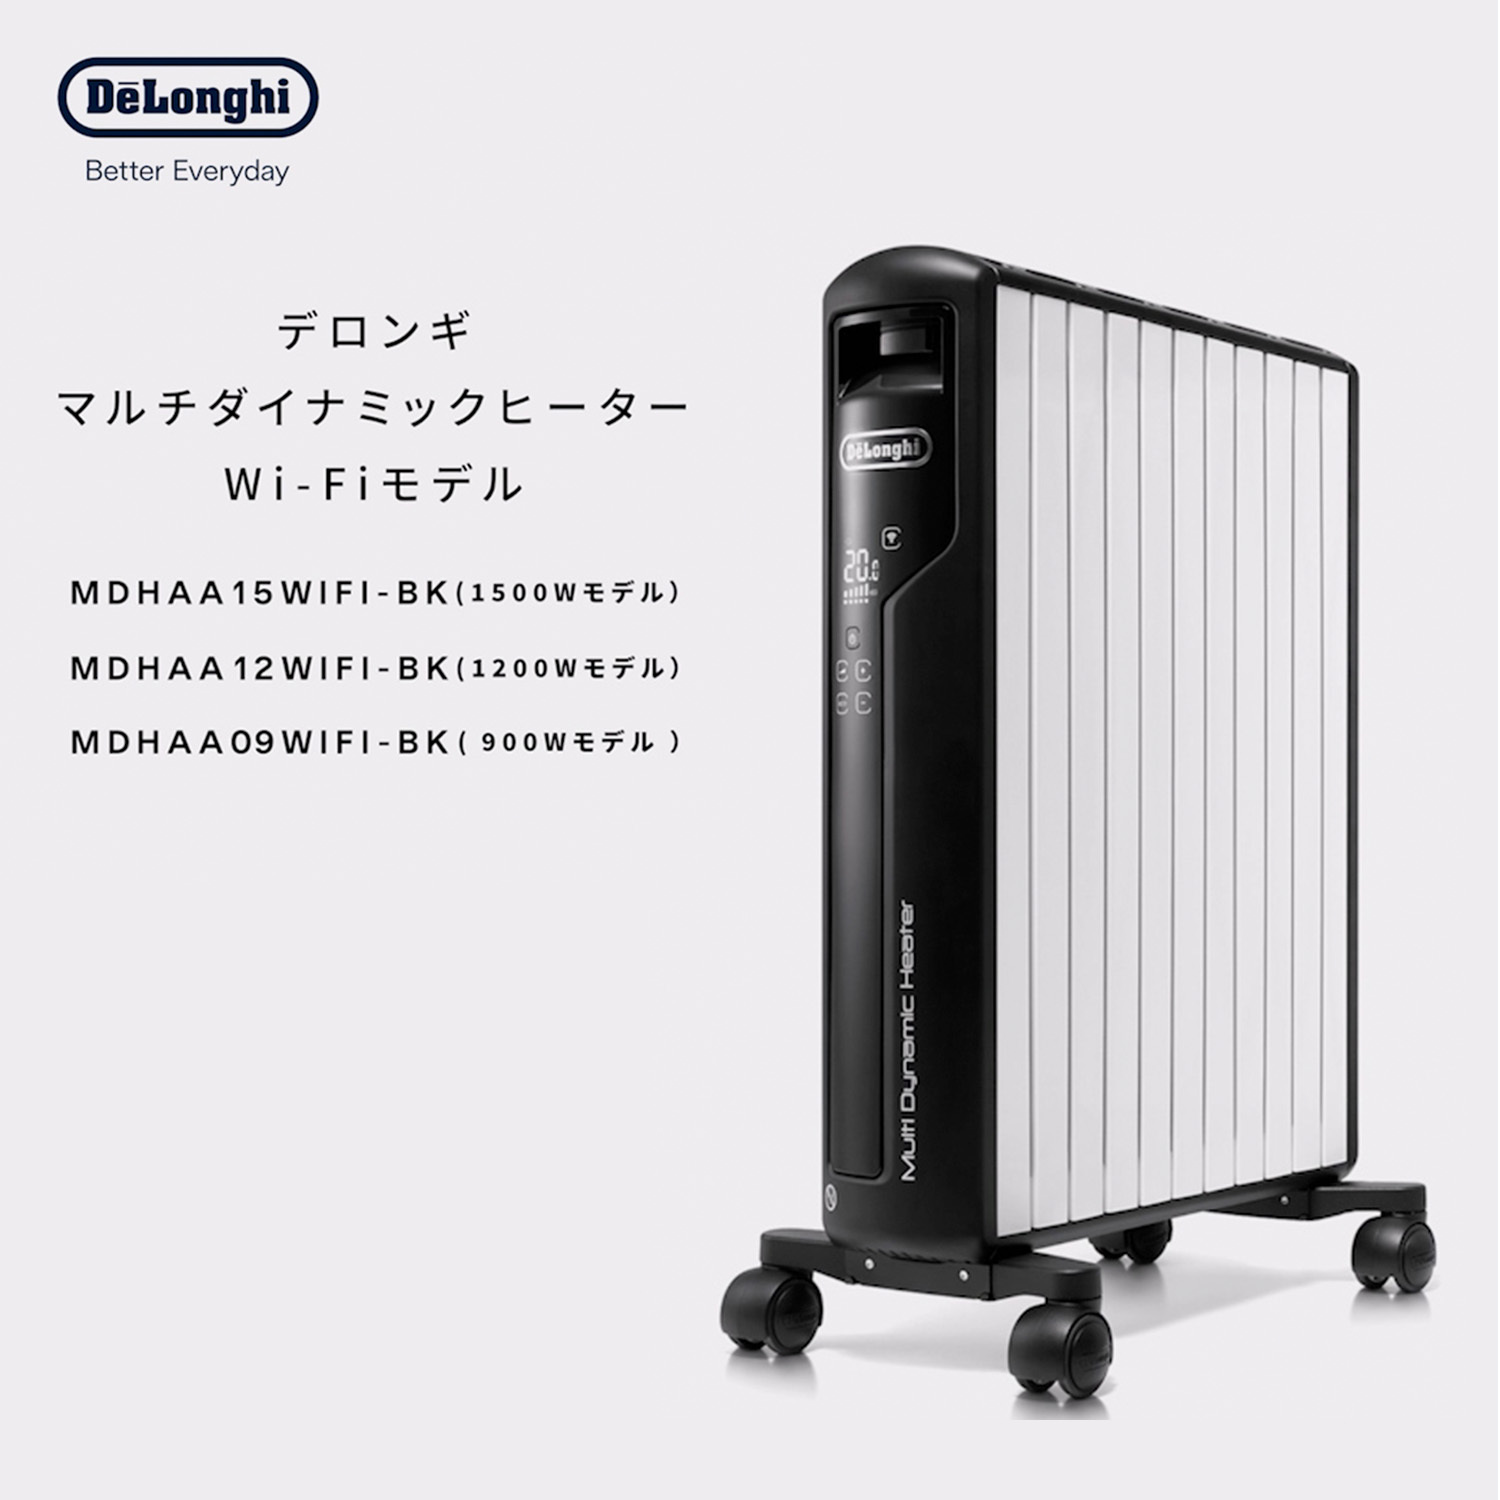 デロンギ マルチダイナミックヒーター Wi-Fiモデル MDHAA15WIFI-BK 